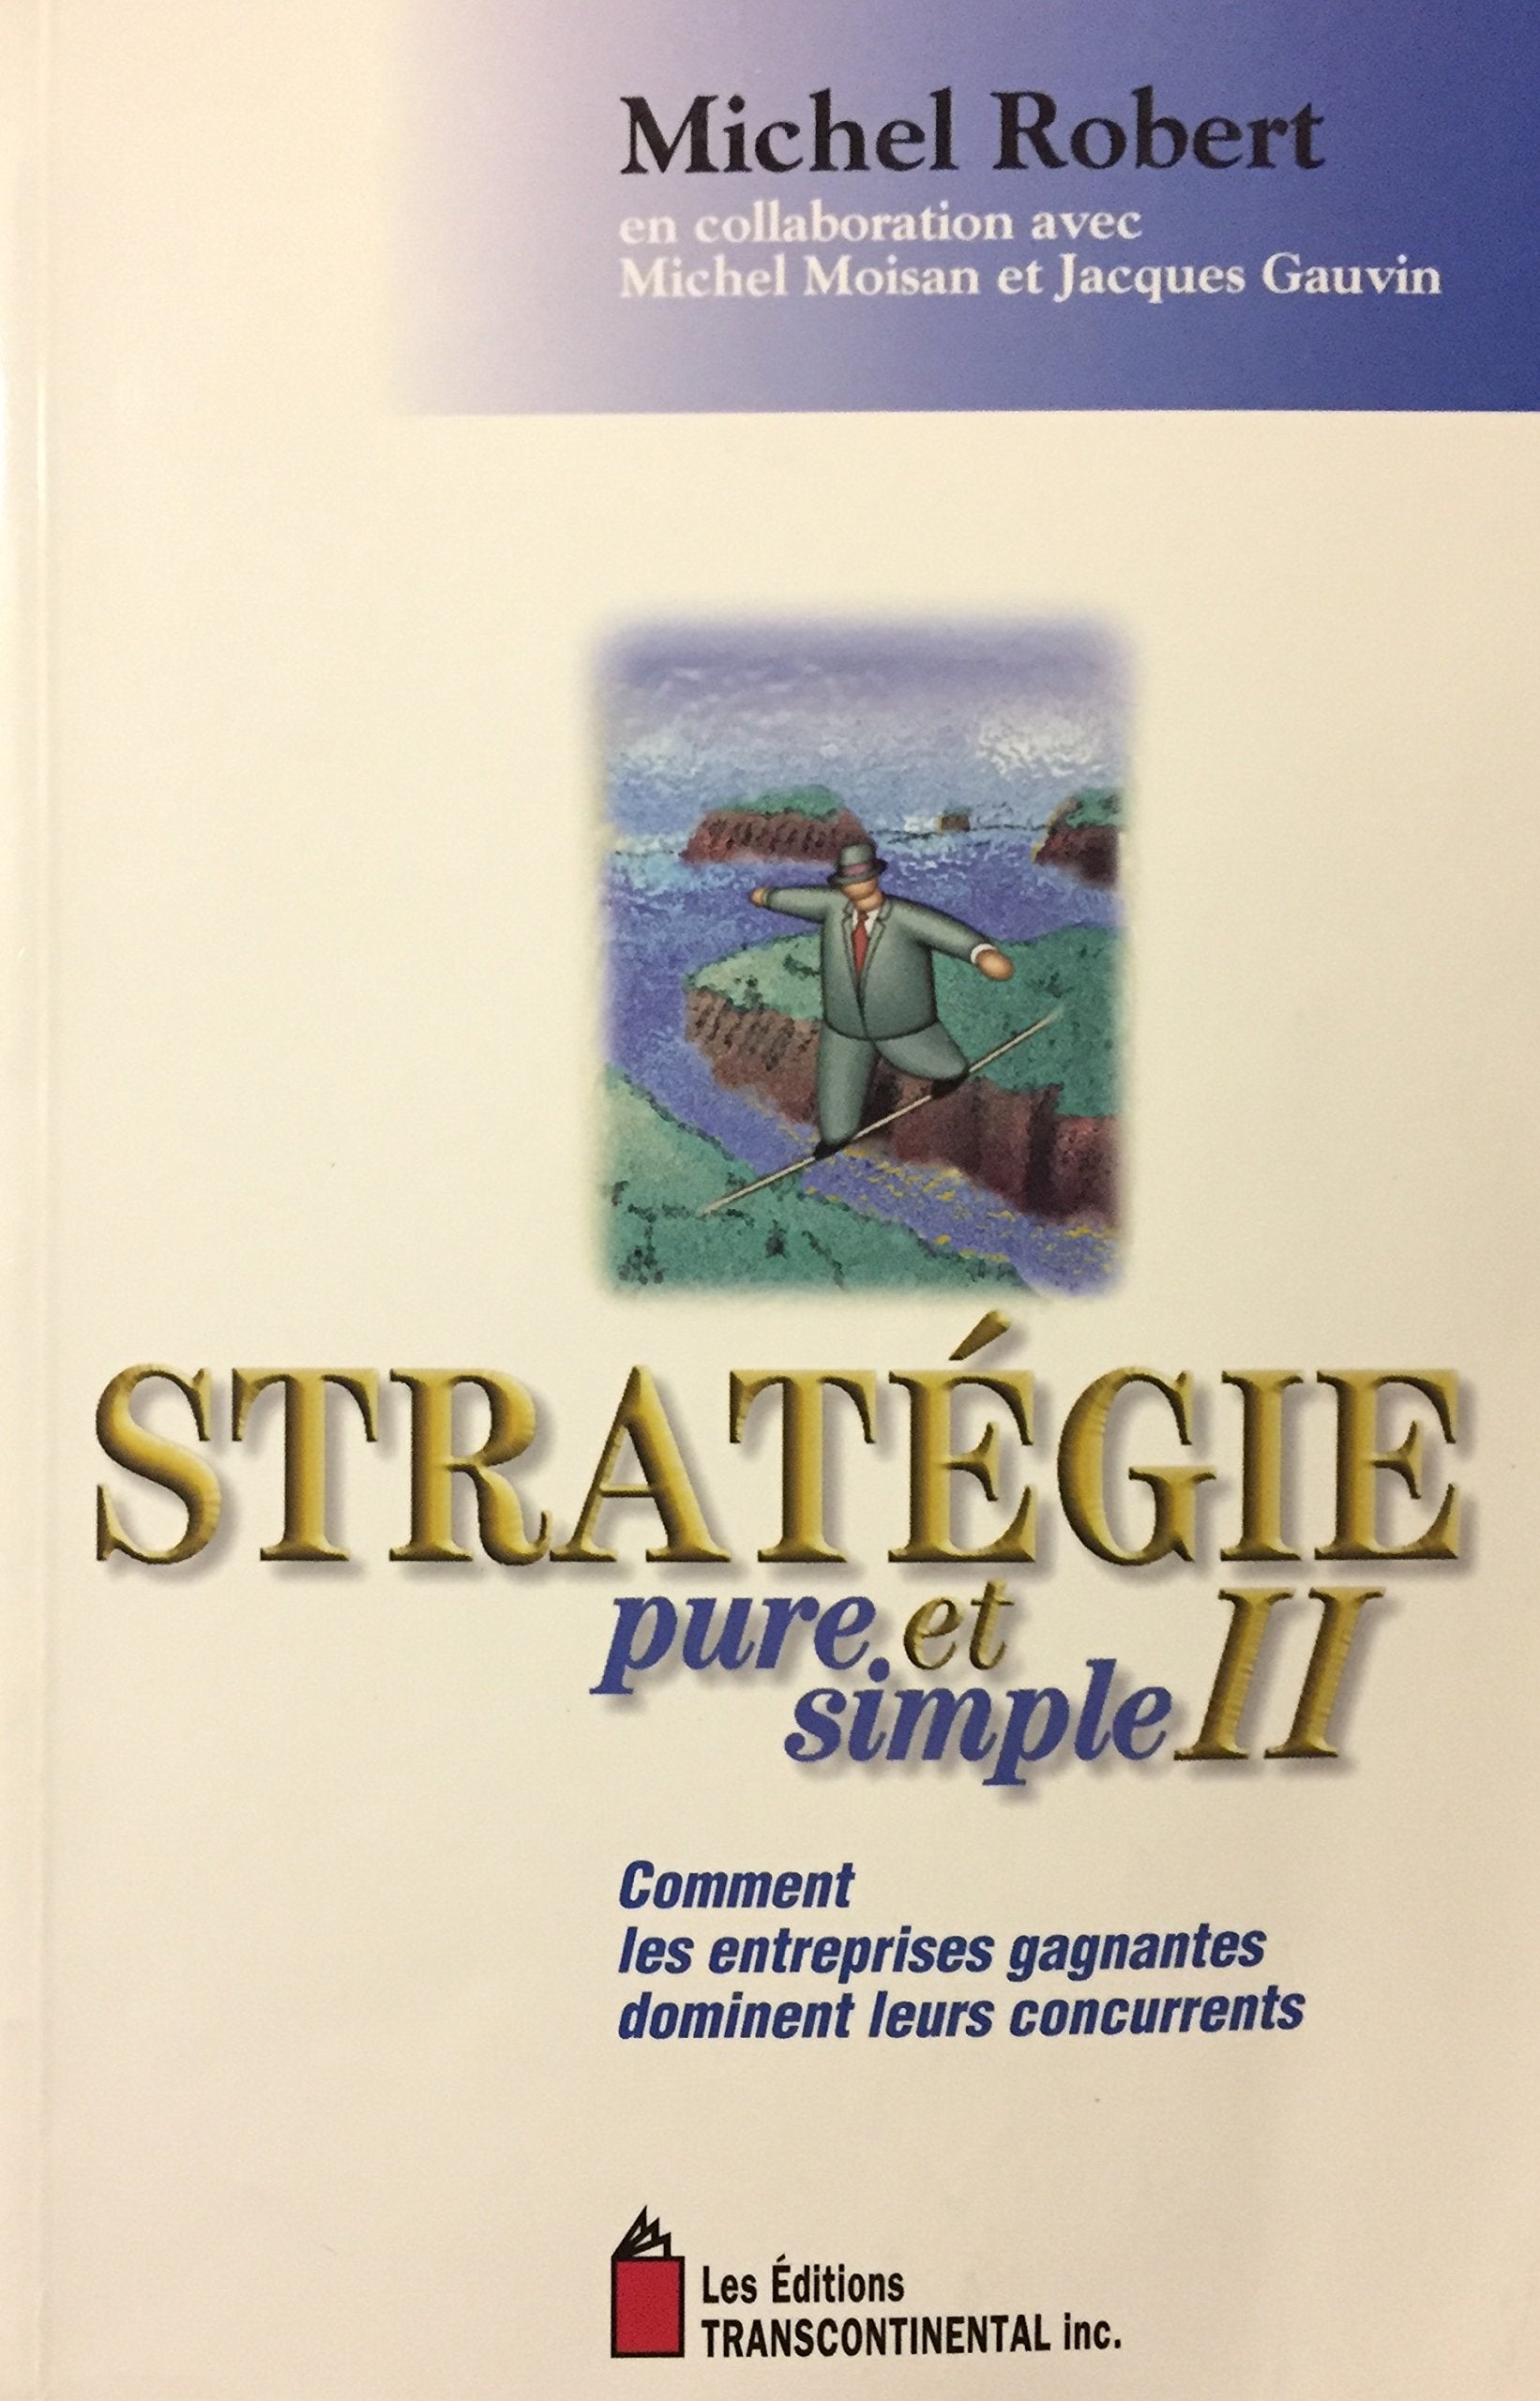 Livre ISBN 2894721048 Stratégie pure et simple II : Comment les entreprises gagnantes dominent leurs concurrents (Michel Robert)